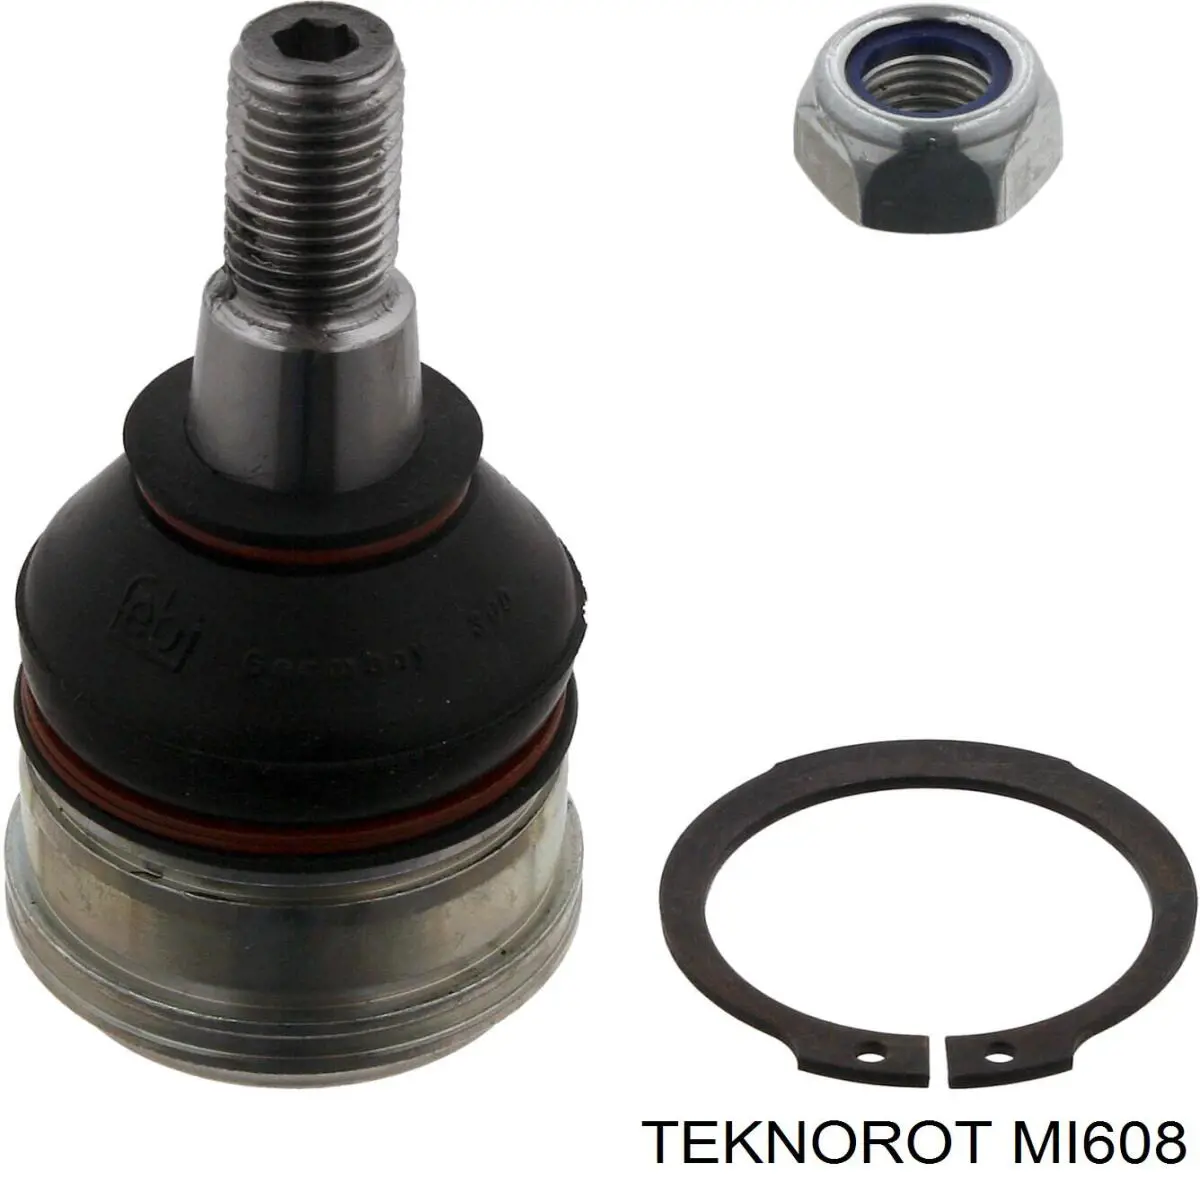 MI-608 Teknorot barra oscilante, suspensión de ruedas delantera, inferior derecha